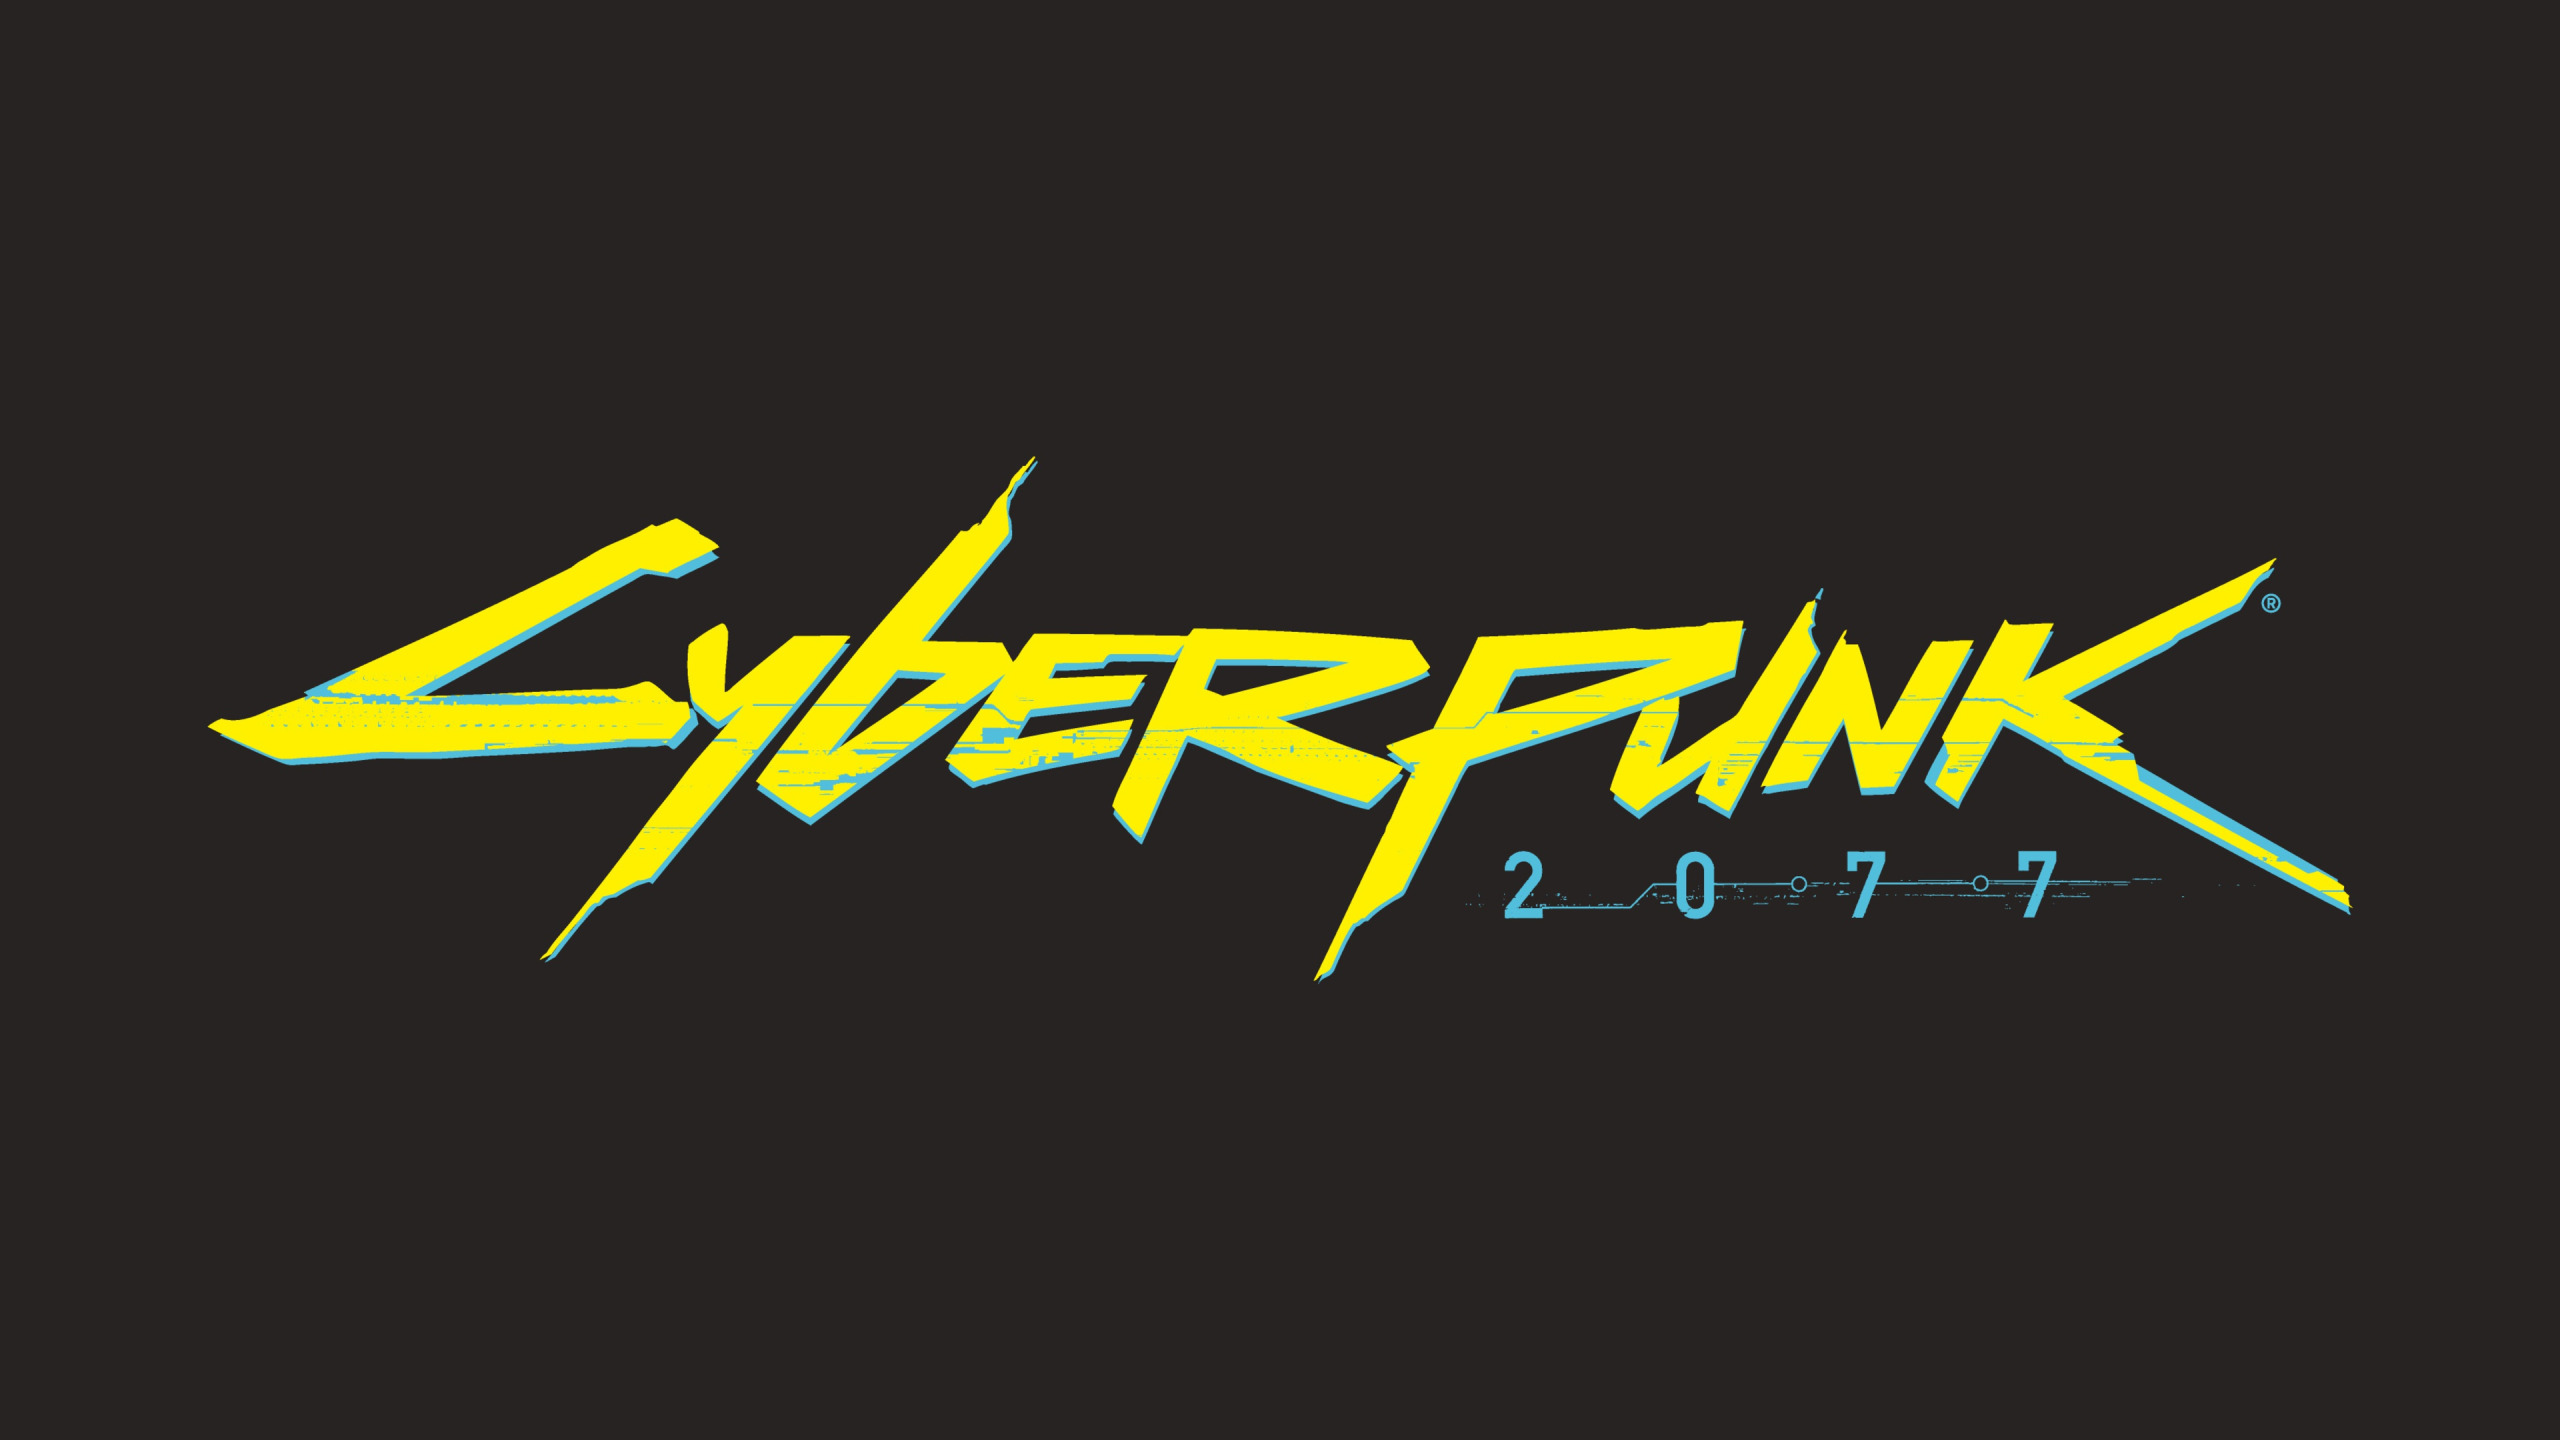 Cyberpunk logo animation фото 78